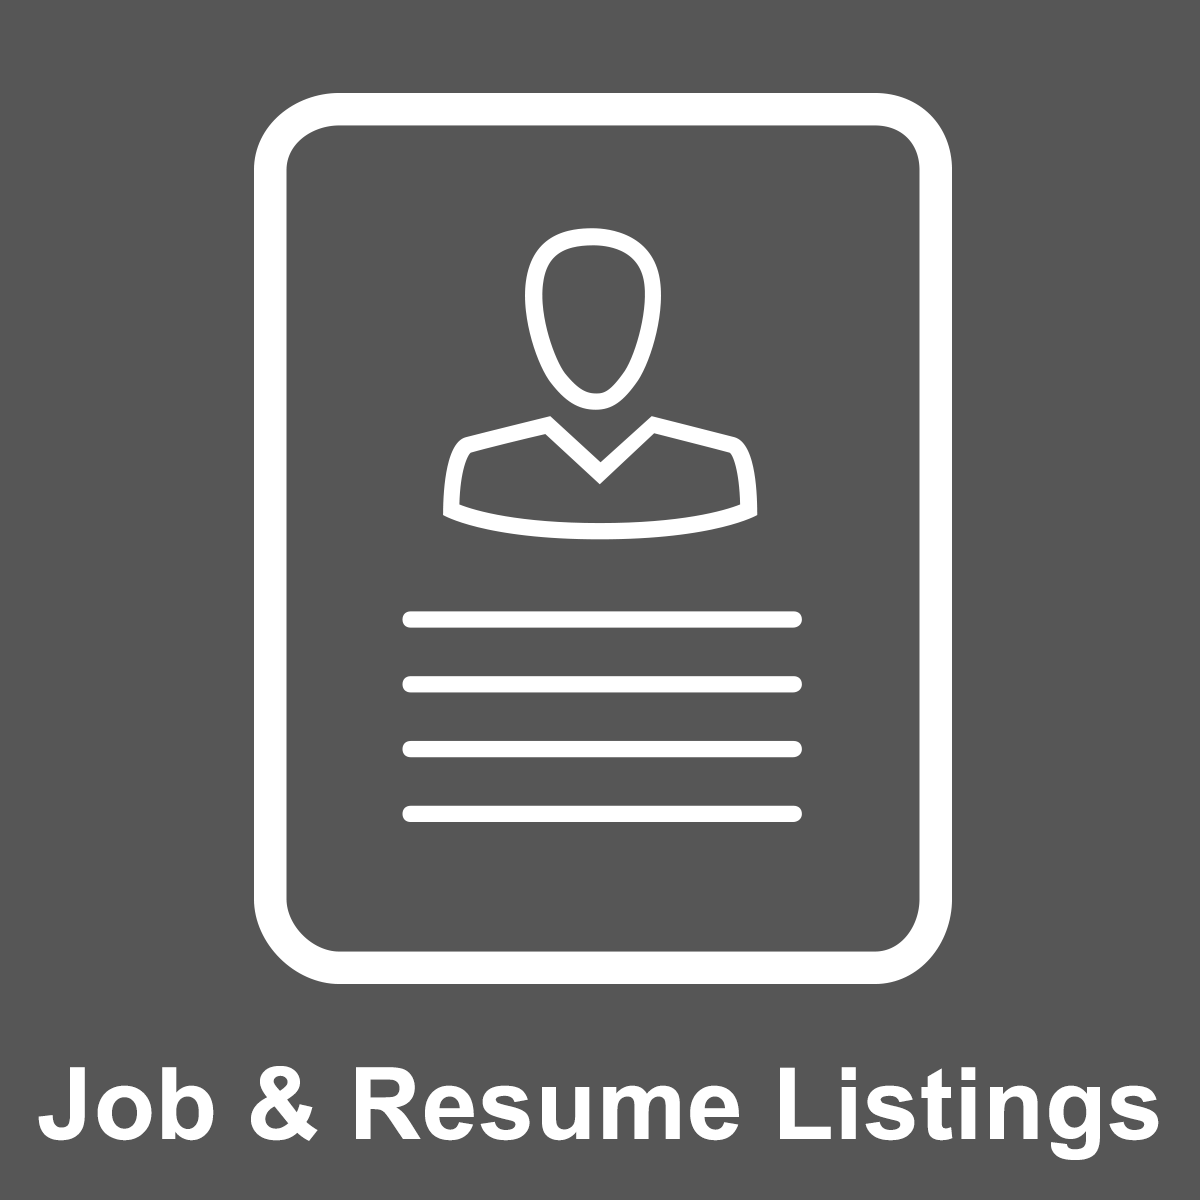 Resume & Job Listings